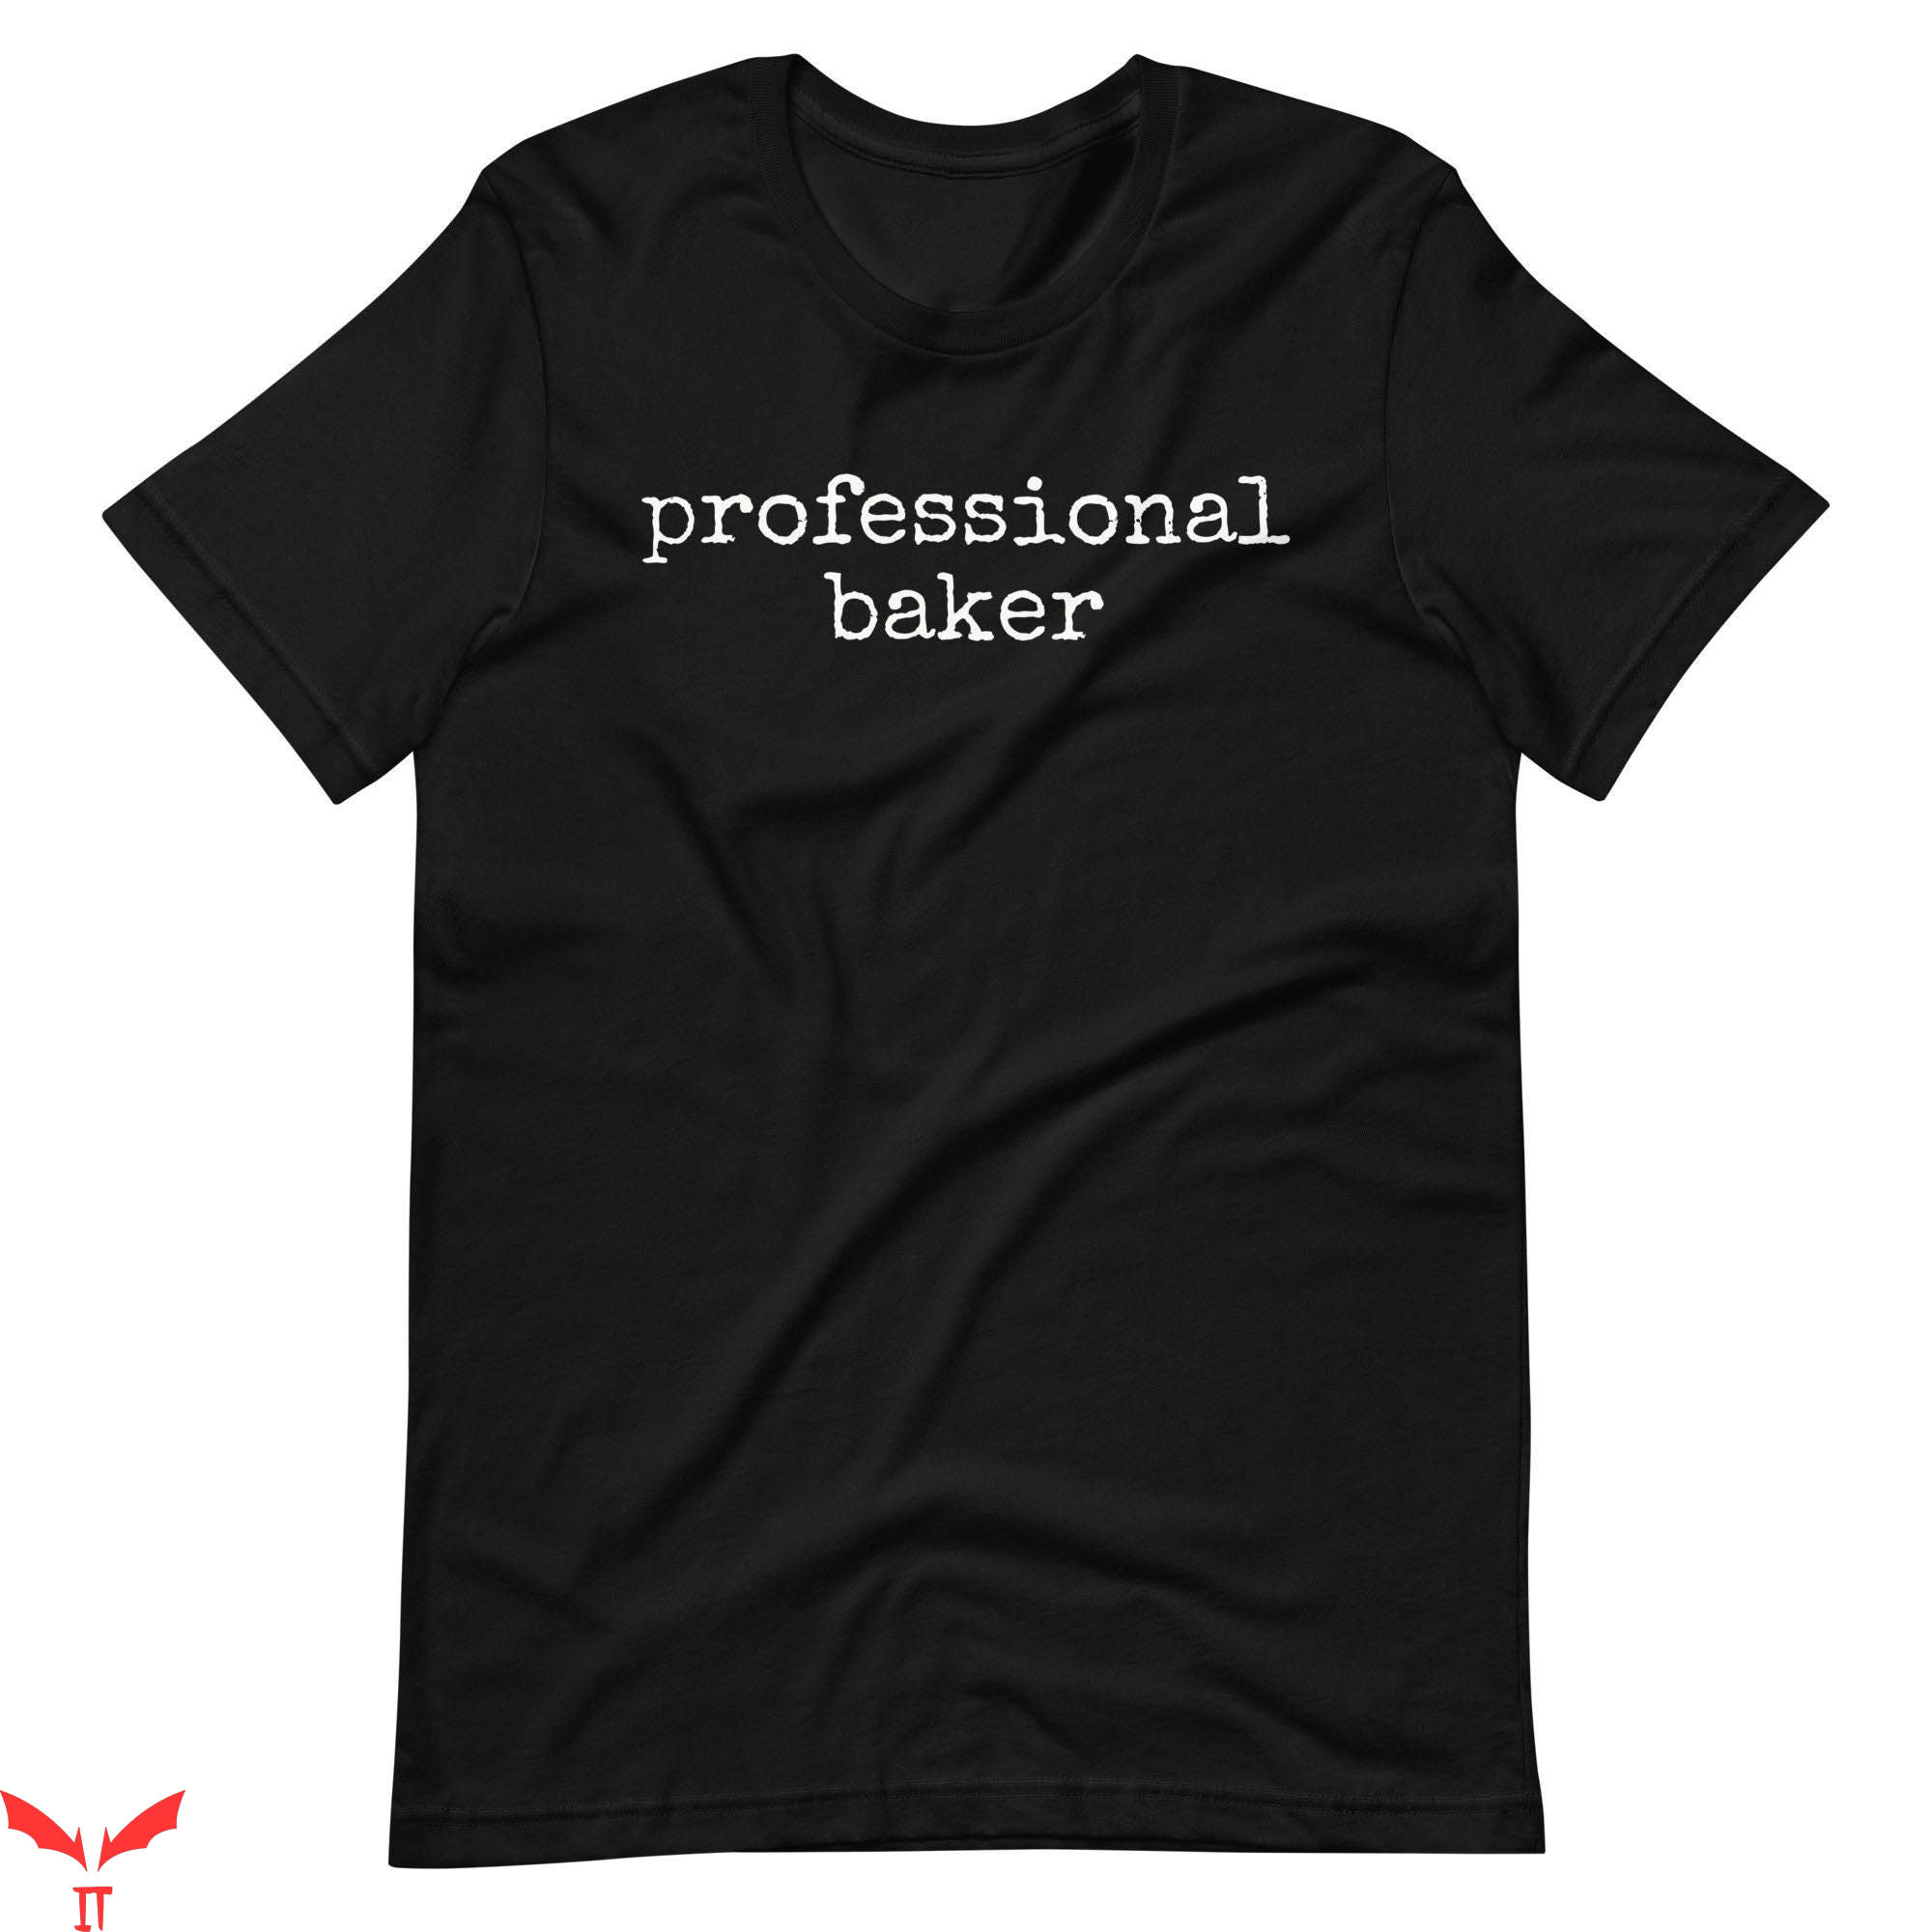 Baker T-Shirt Professional Baker T-Shirt